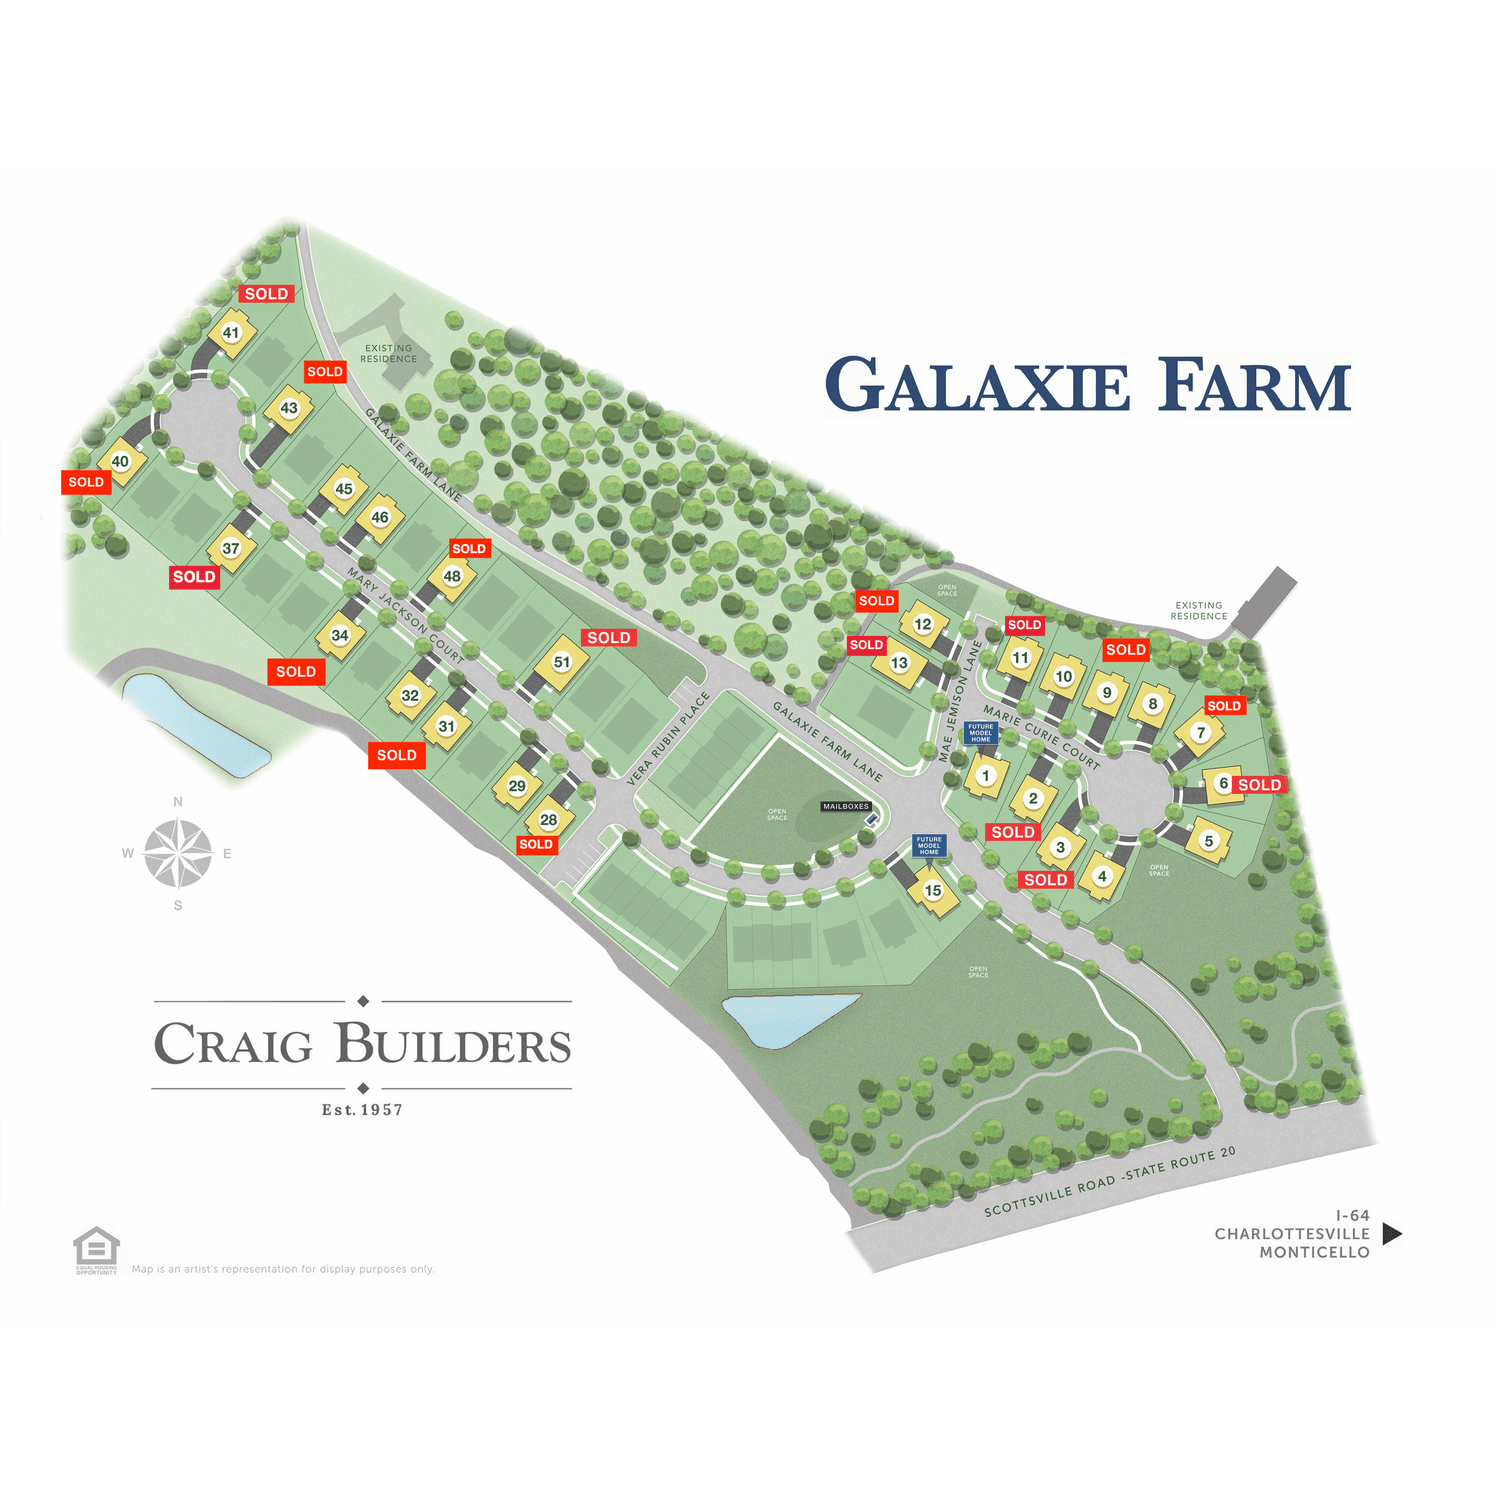 12. Galaxie Farm κτίριο σε 4006 Marie Curie Court, Charlottesville, VA 22902